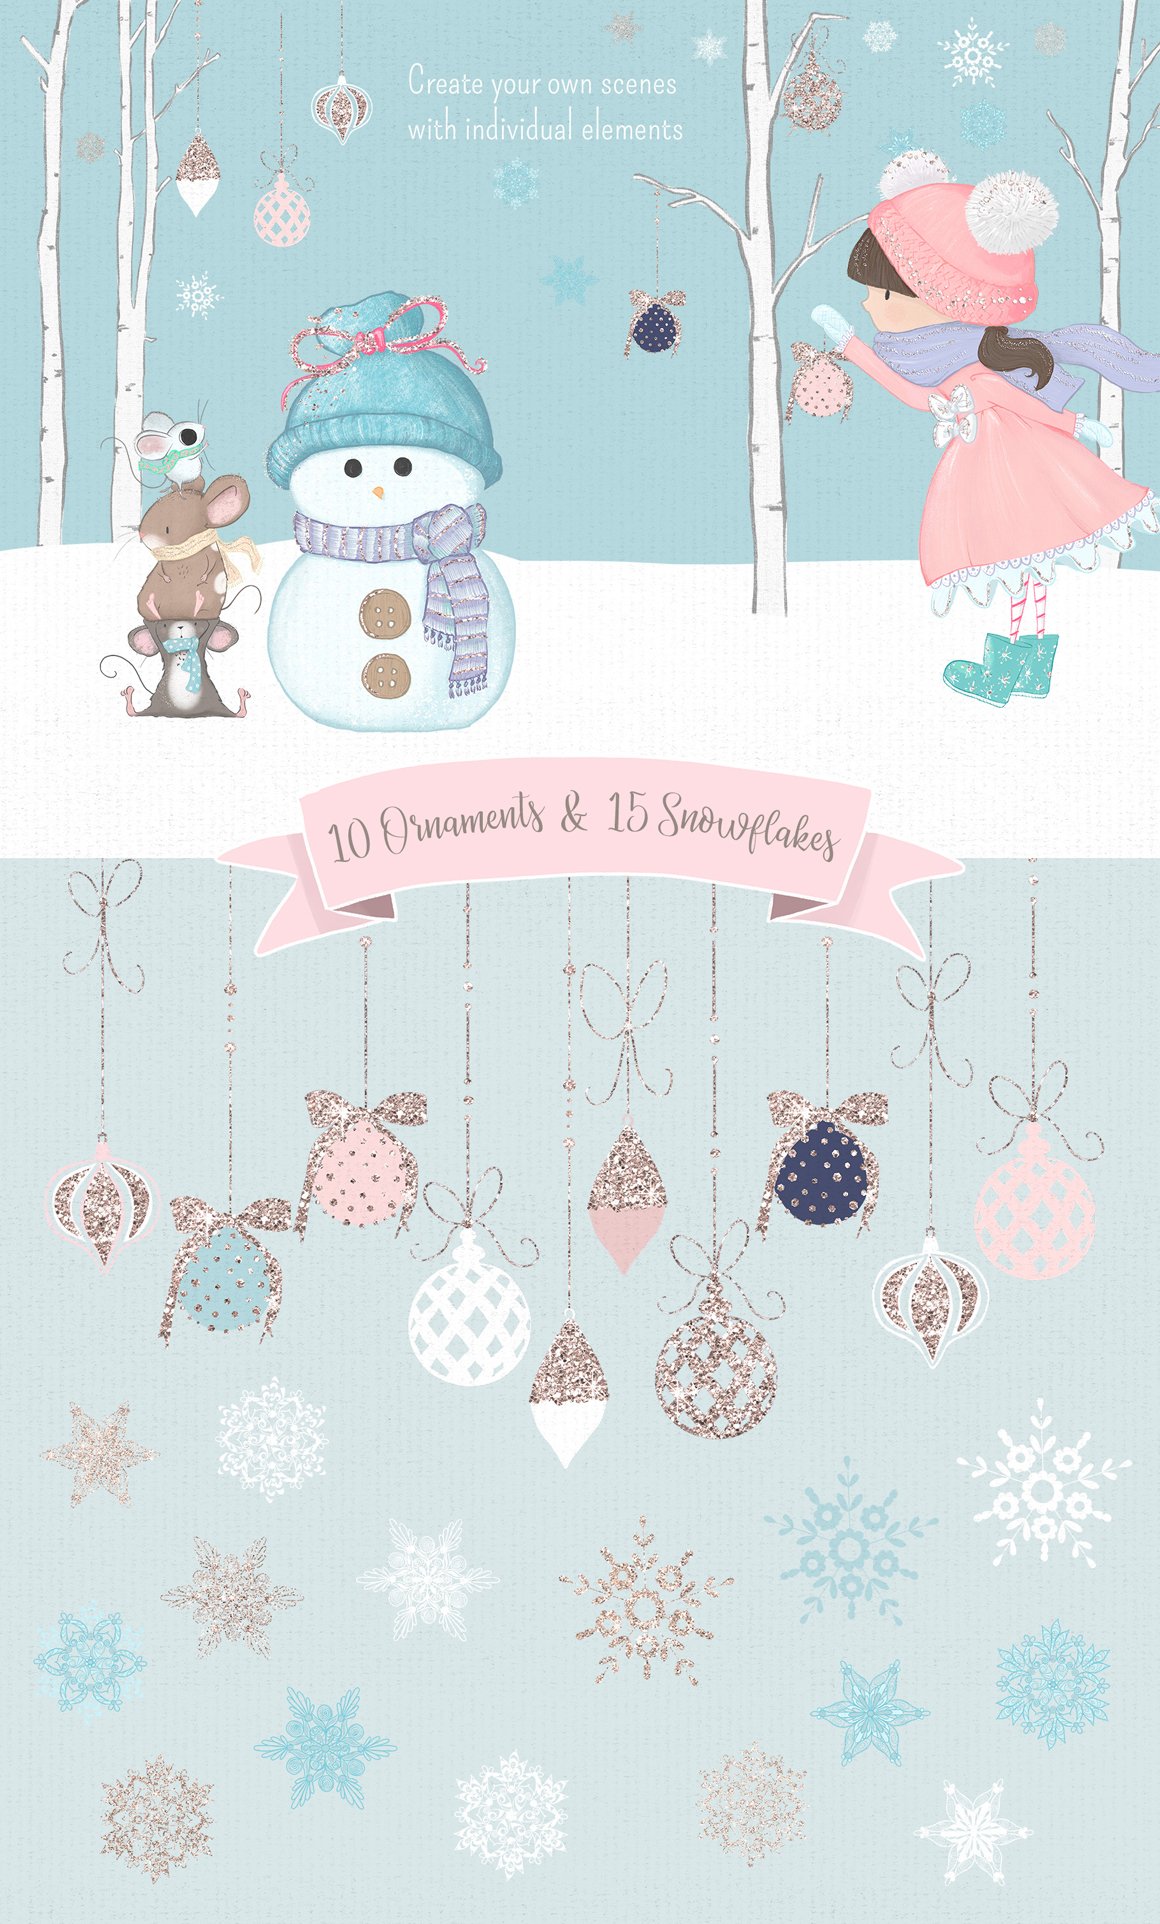 Winter Whimsy Clip Art Kit